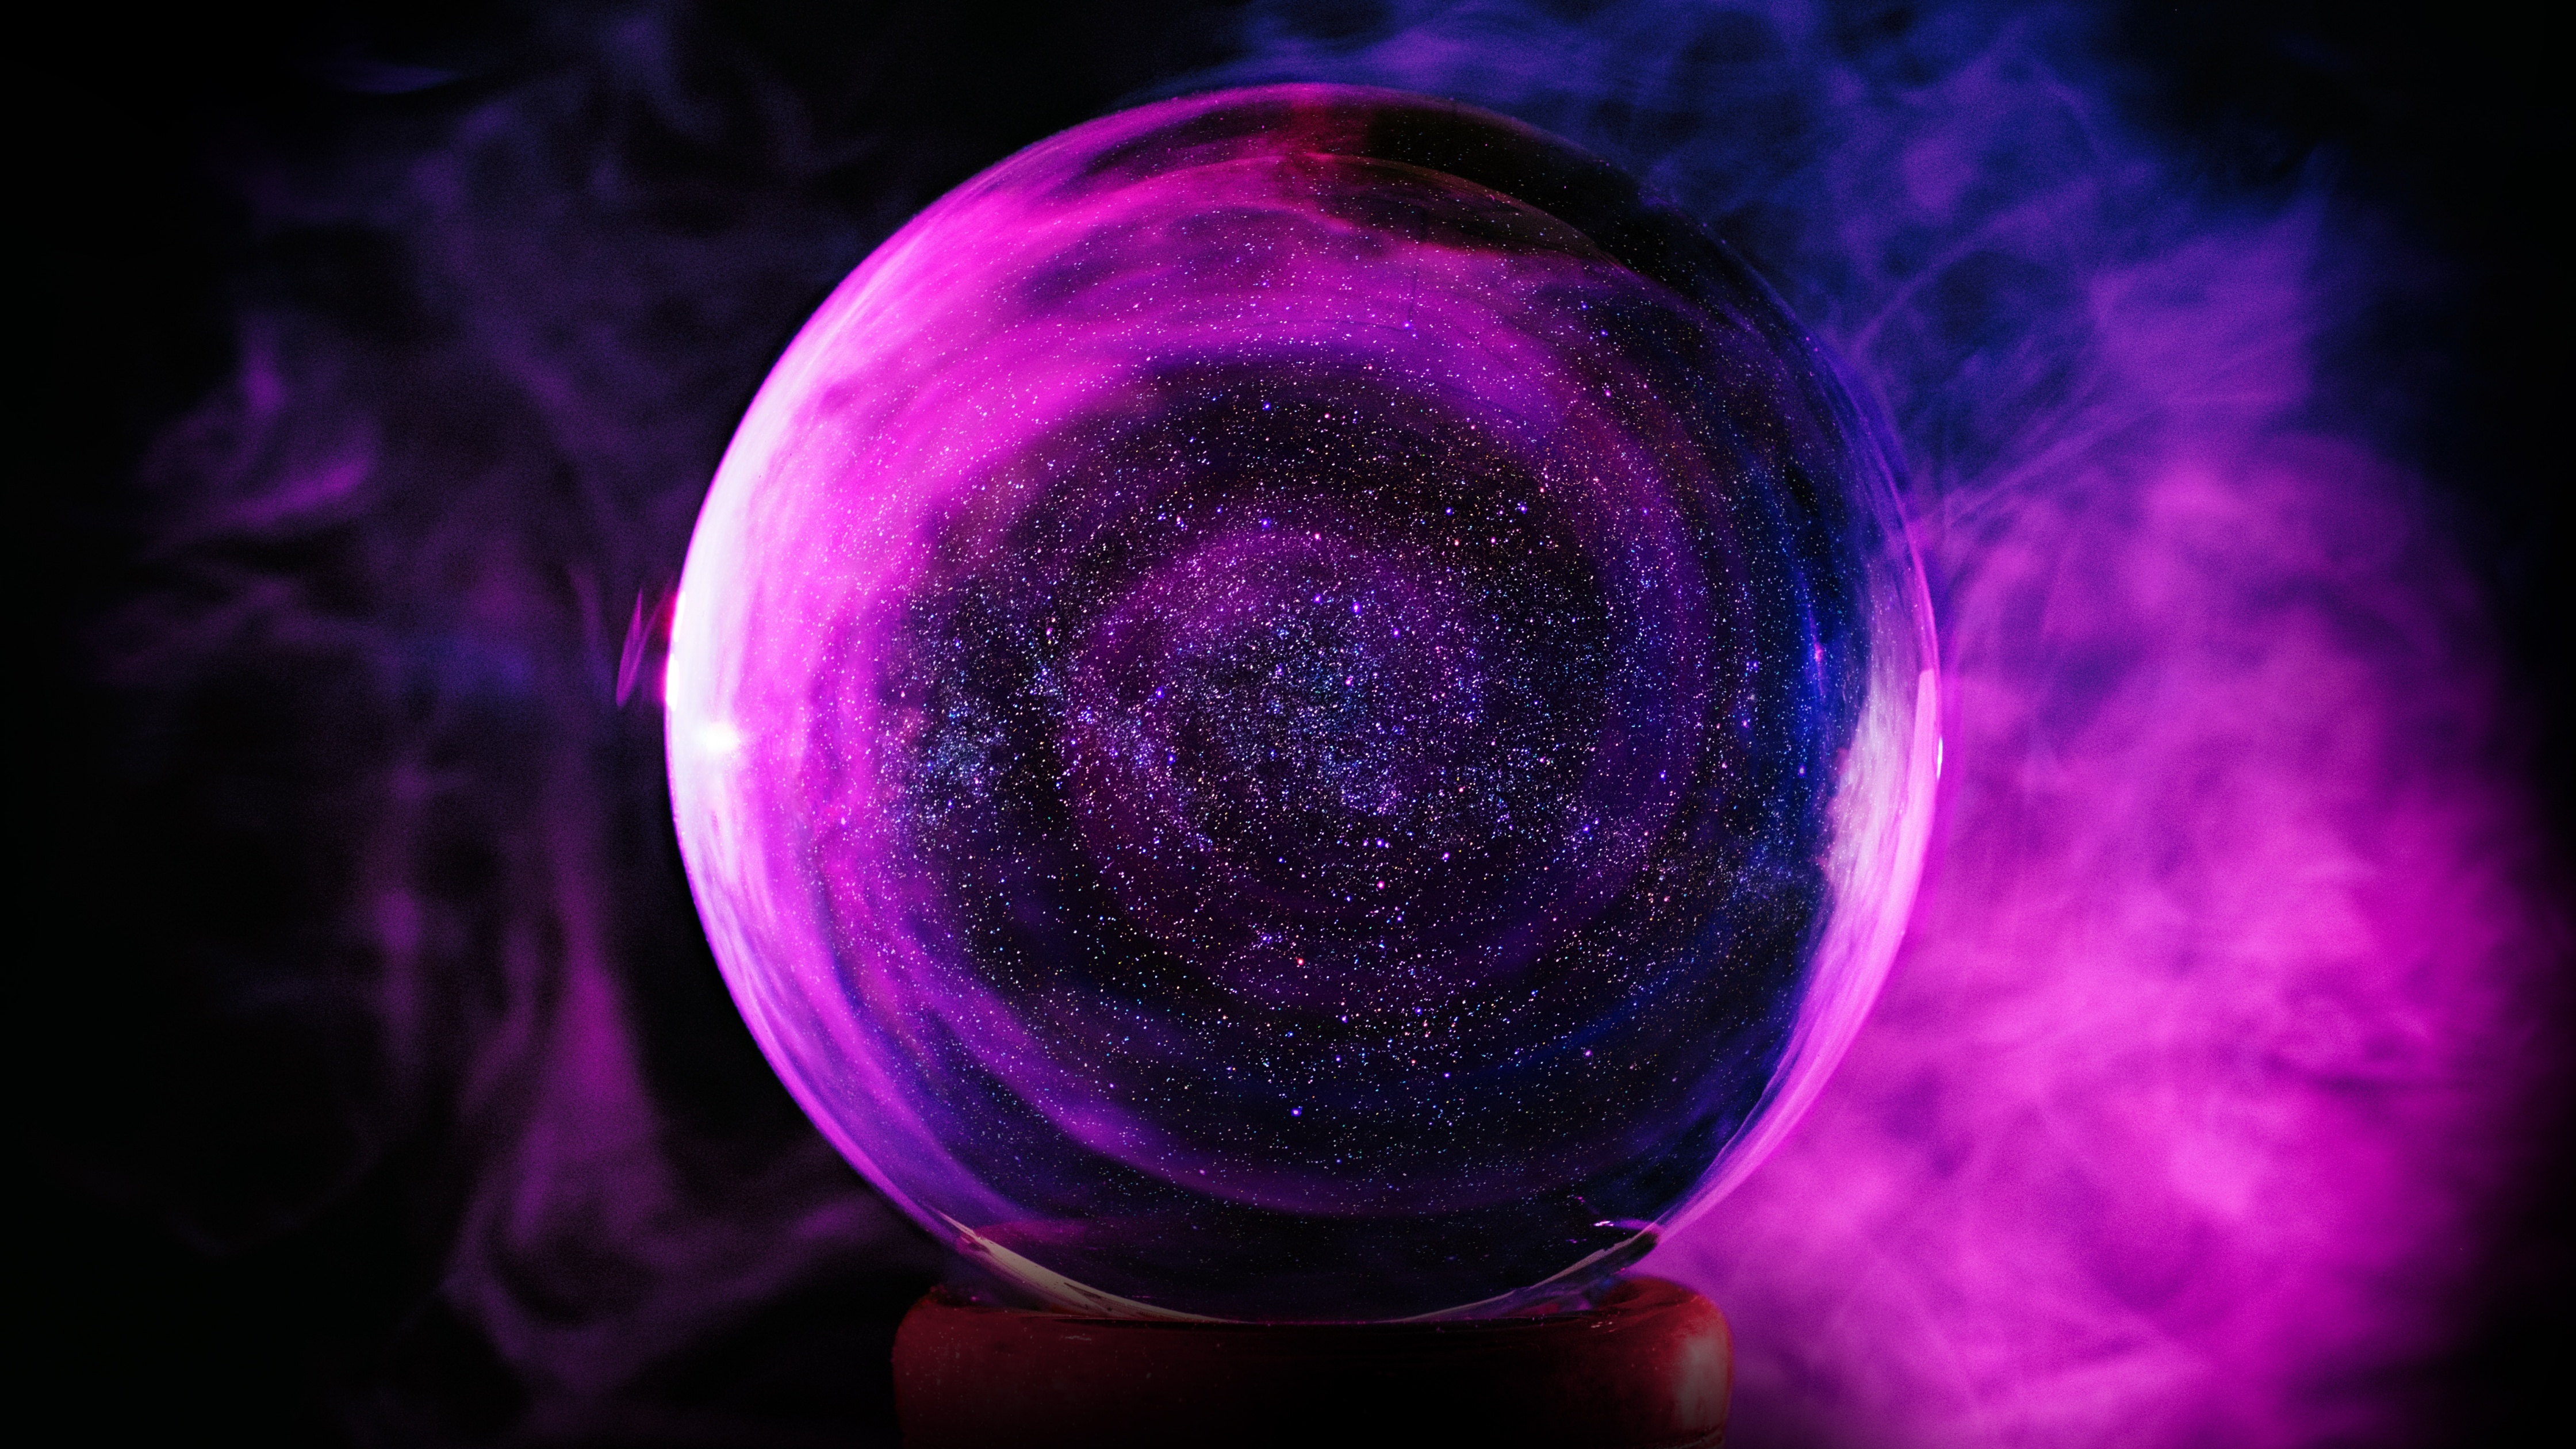 Crystal Ball Wallpaper 4K, Purple Smoke, Abstract, #3543